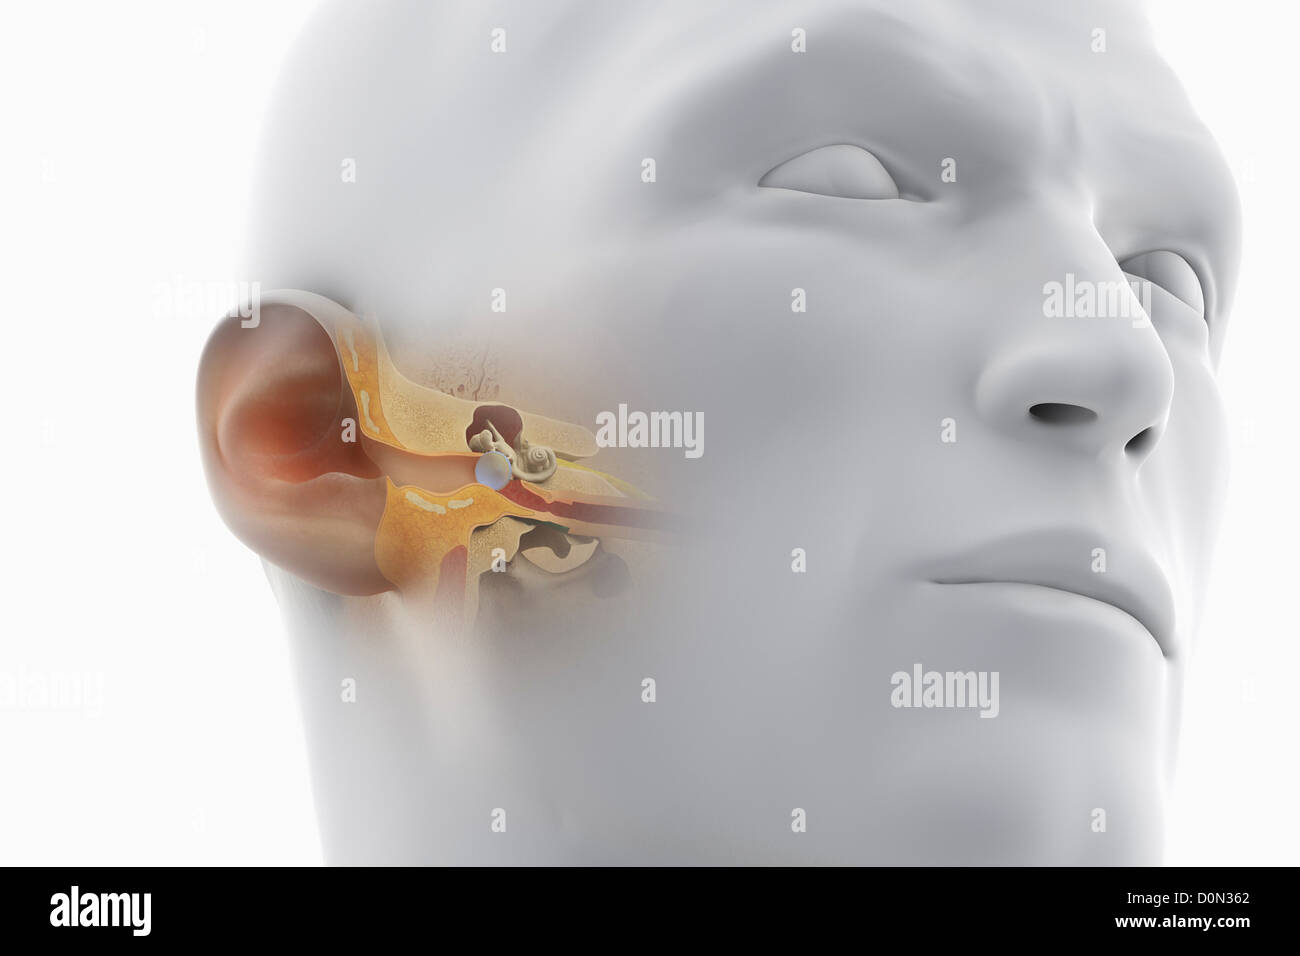 Une vue en coupe de la tête, révélant l'anatomie du canal auditif et de l'anatomie de l'oreille interne. Banque D'Images